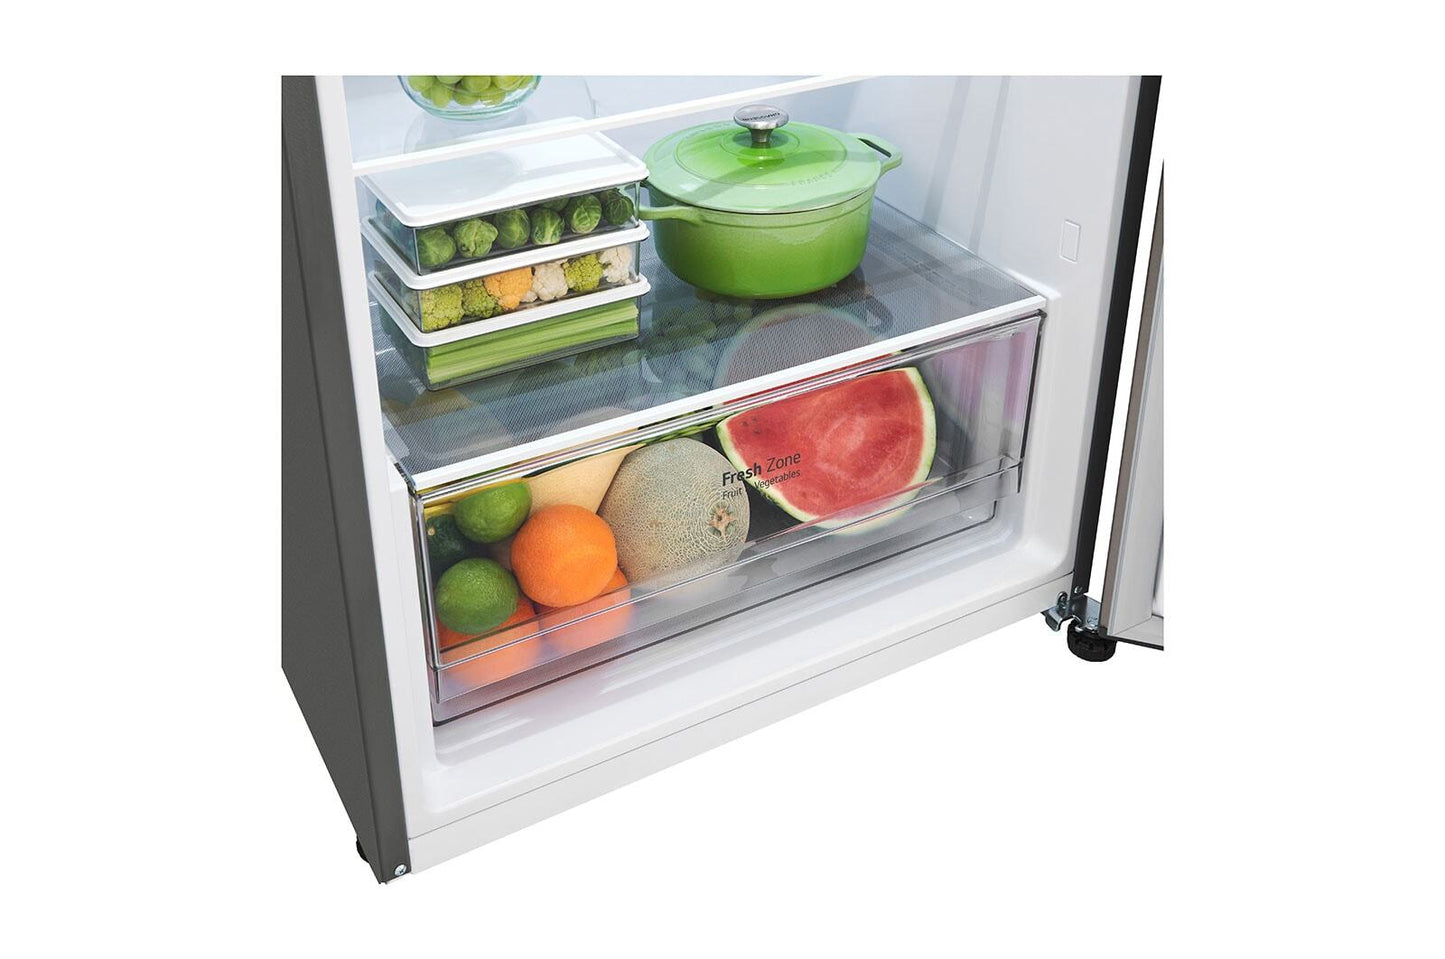 LG GN-392 PLGB 395L Top Freezer Refrigerator | Smart Inverter